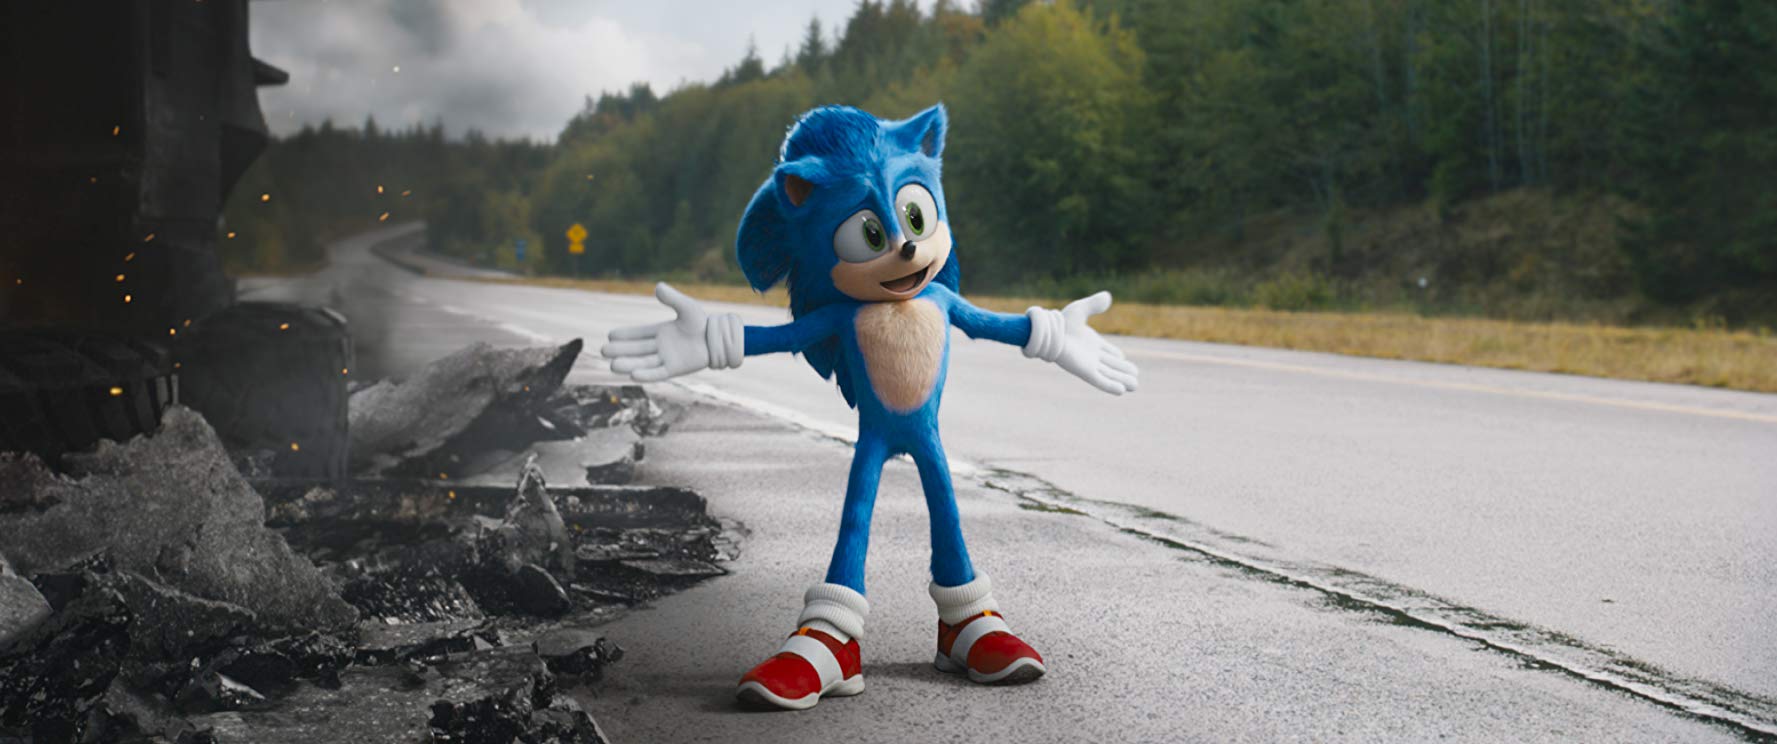 Sonic: do pior ao melhor segundo a crítica